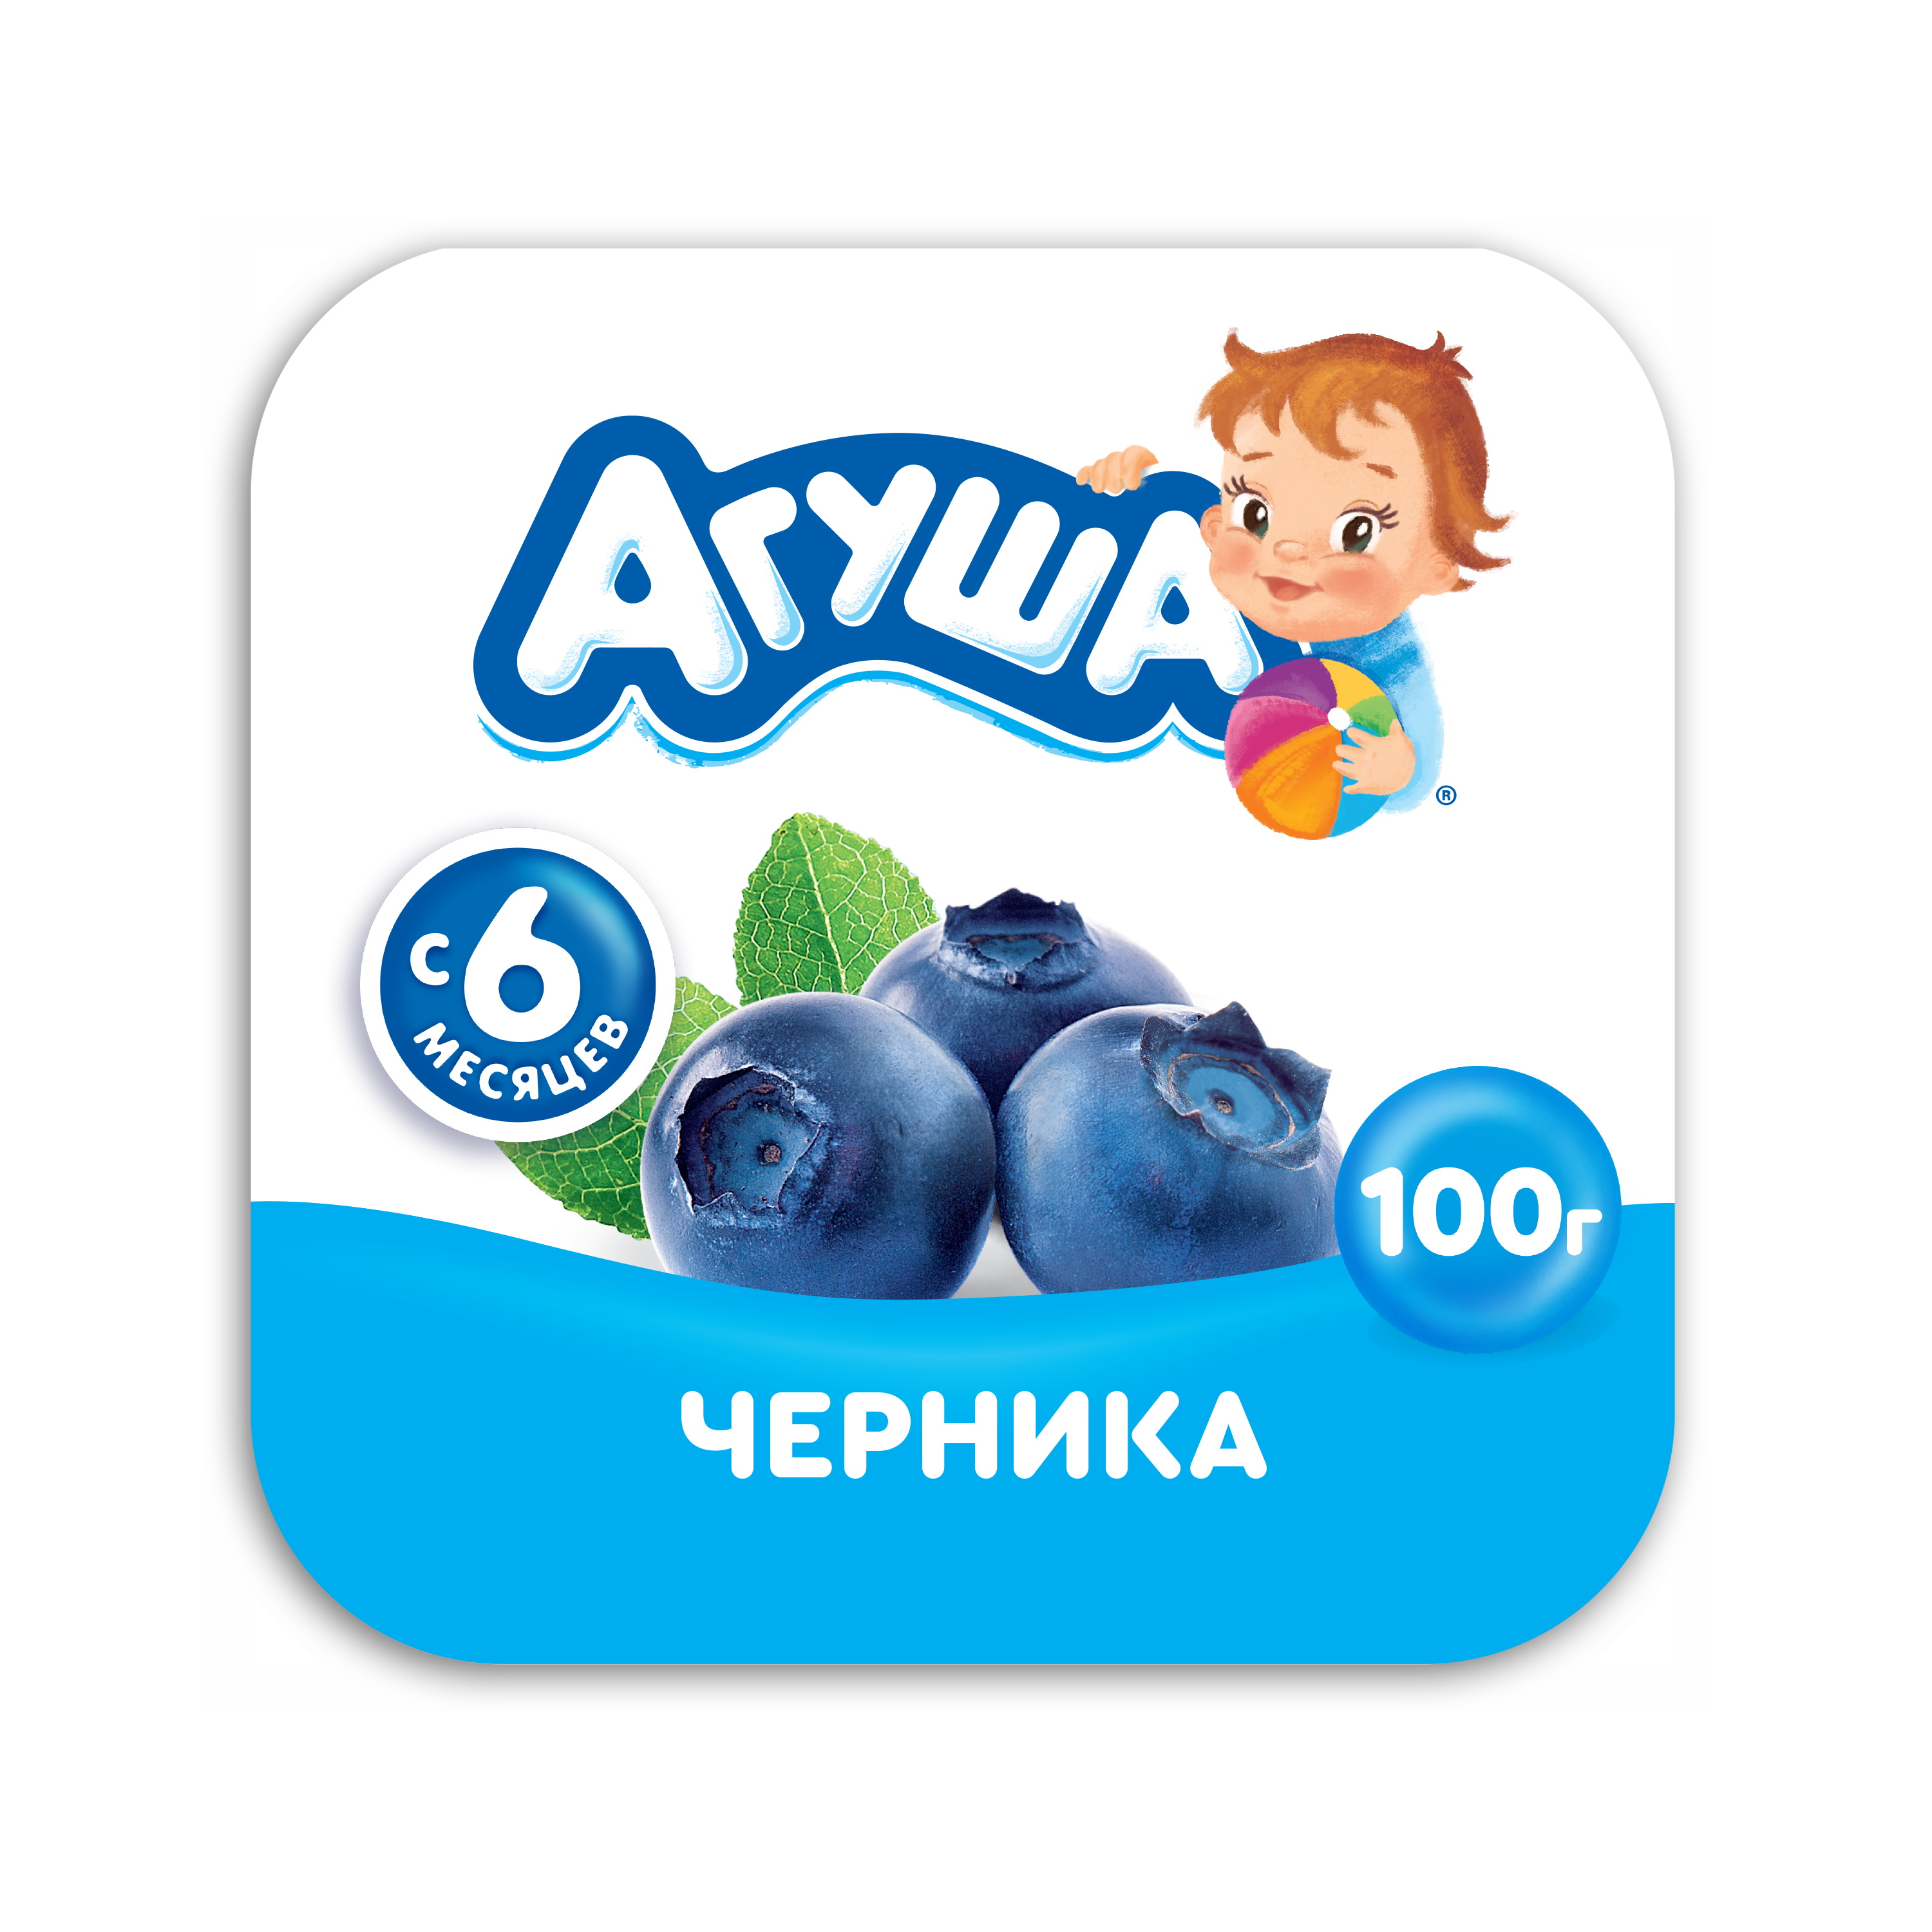 Творожный продукт Агуша черника 3.9% 100 г